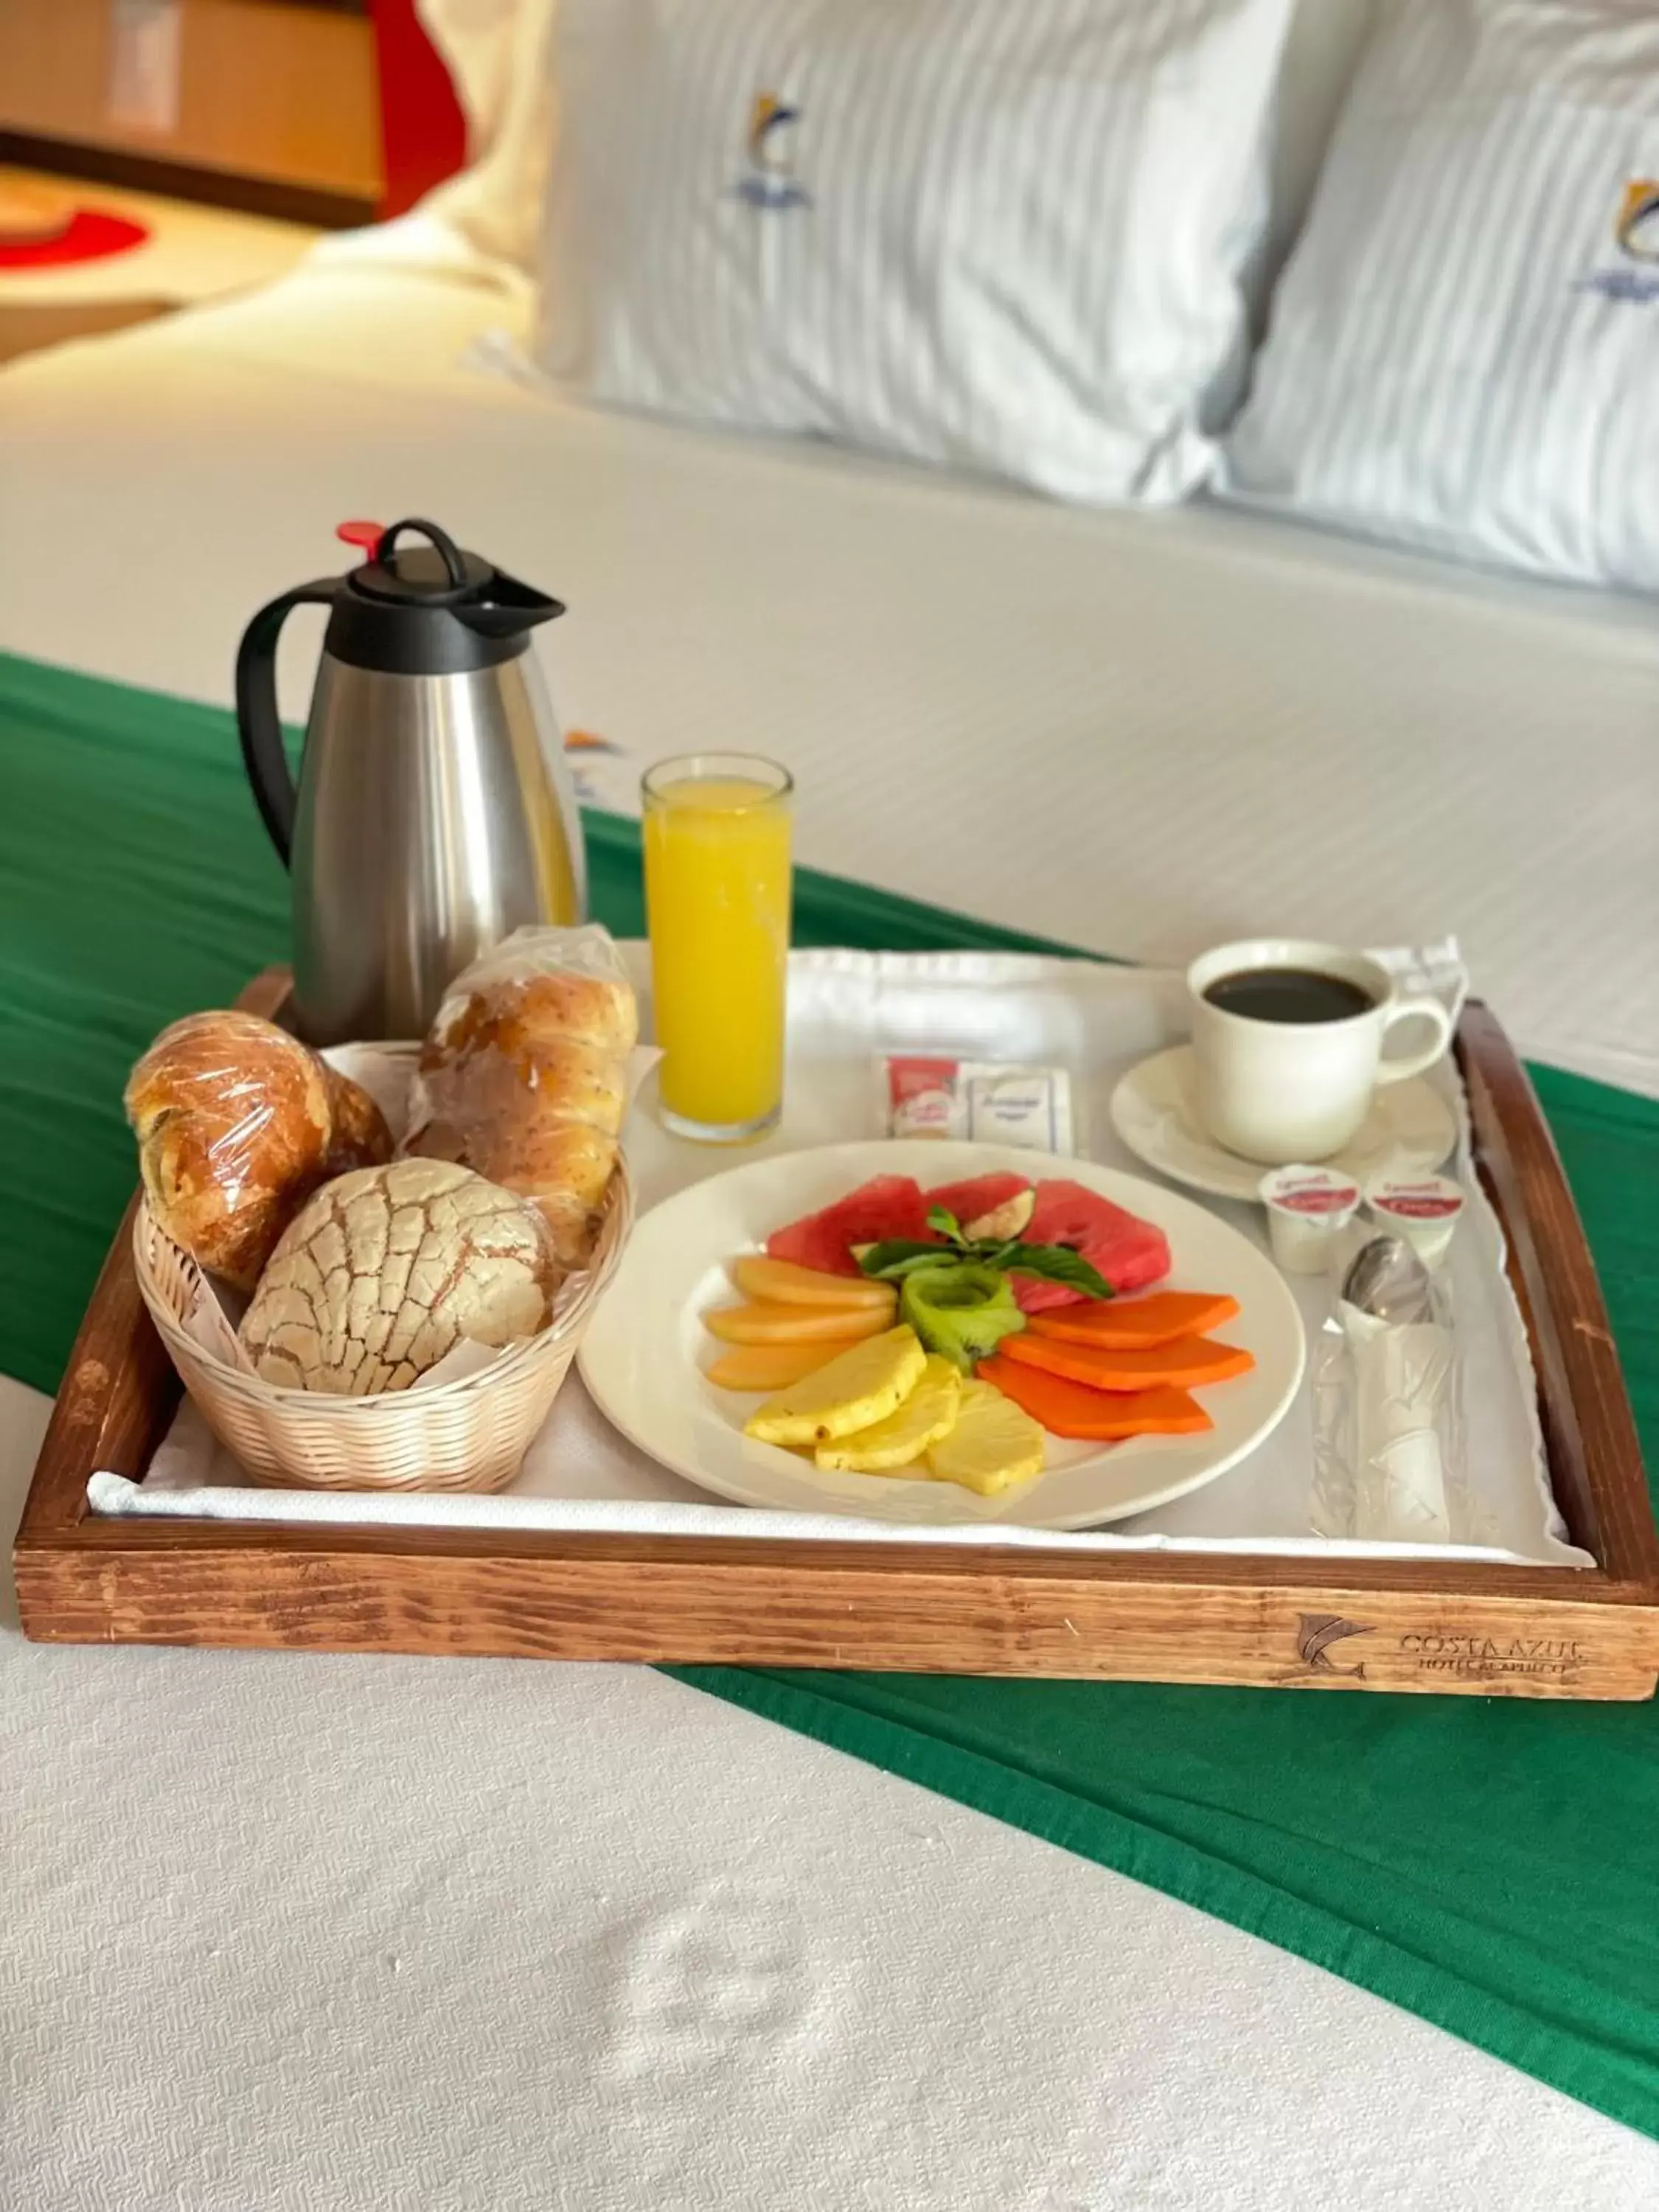 Breakfast in Hotel Costa Azul